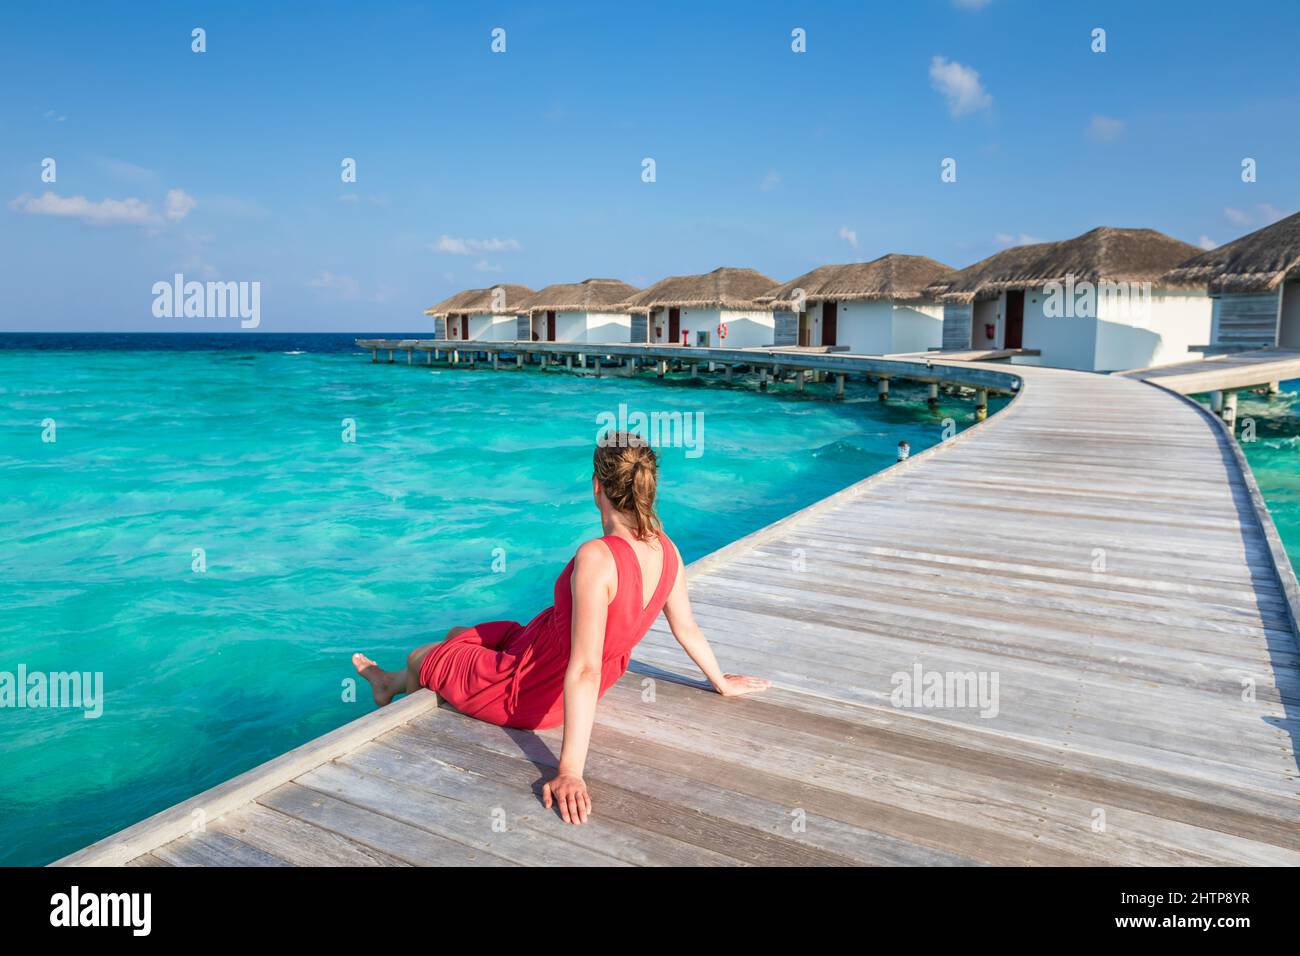 Vacanze in spiaggia con donna rilassante su molo di legno a lussuoso hotel resort in Maldive con ville sull'acqua, acque turchesi del mare e blu s. Foto Stock